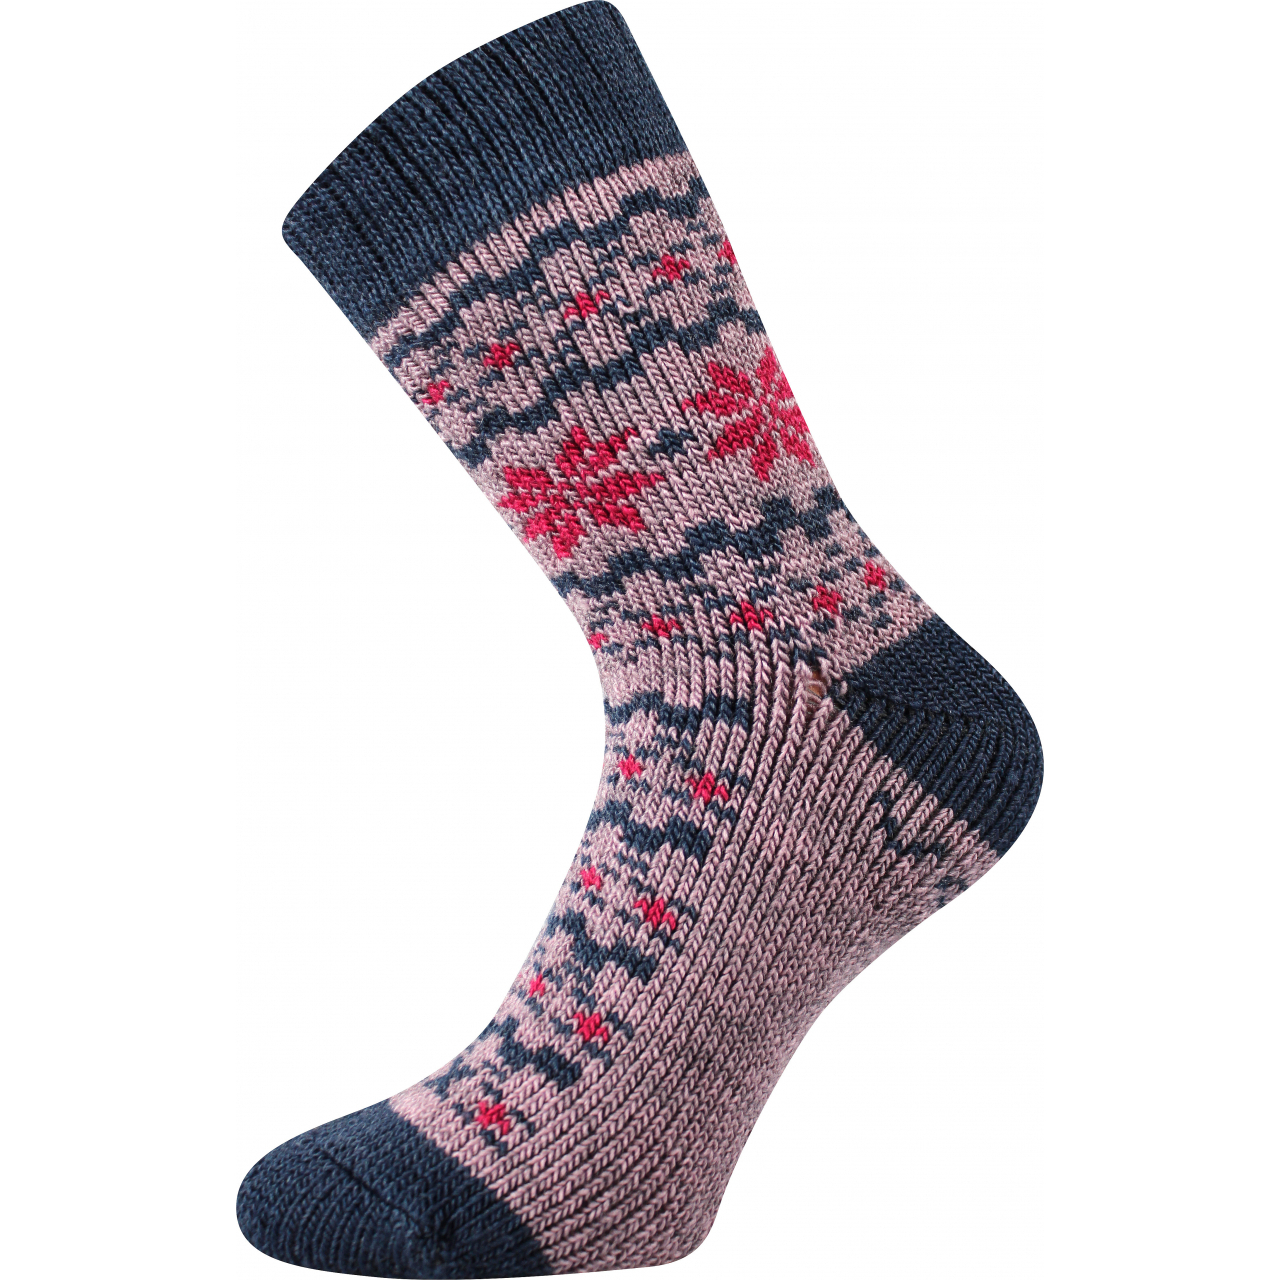 Ponožky unisex zimní Voxx Trondelag - světle růžové, 35-38